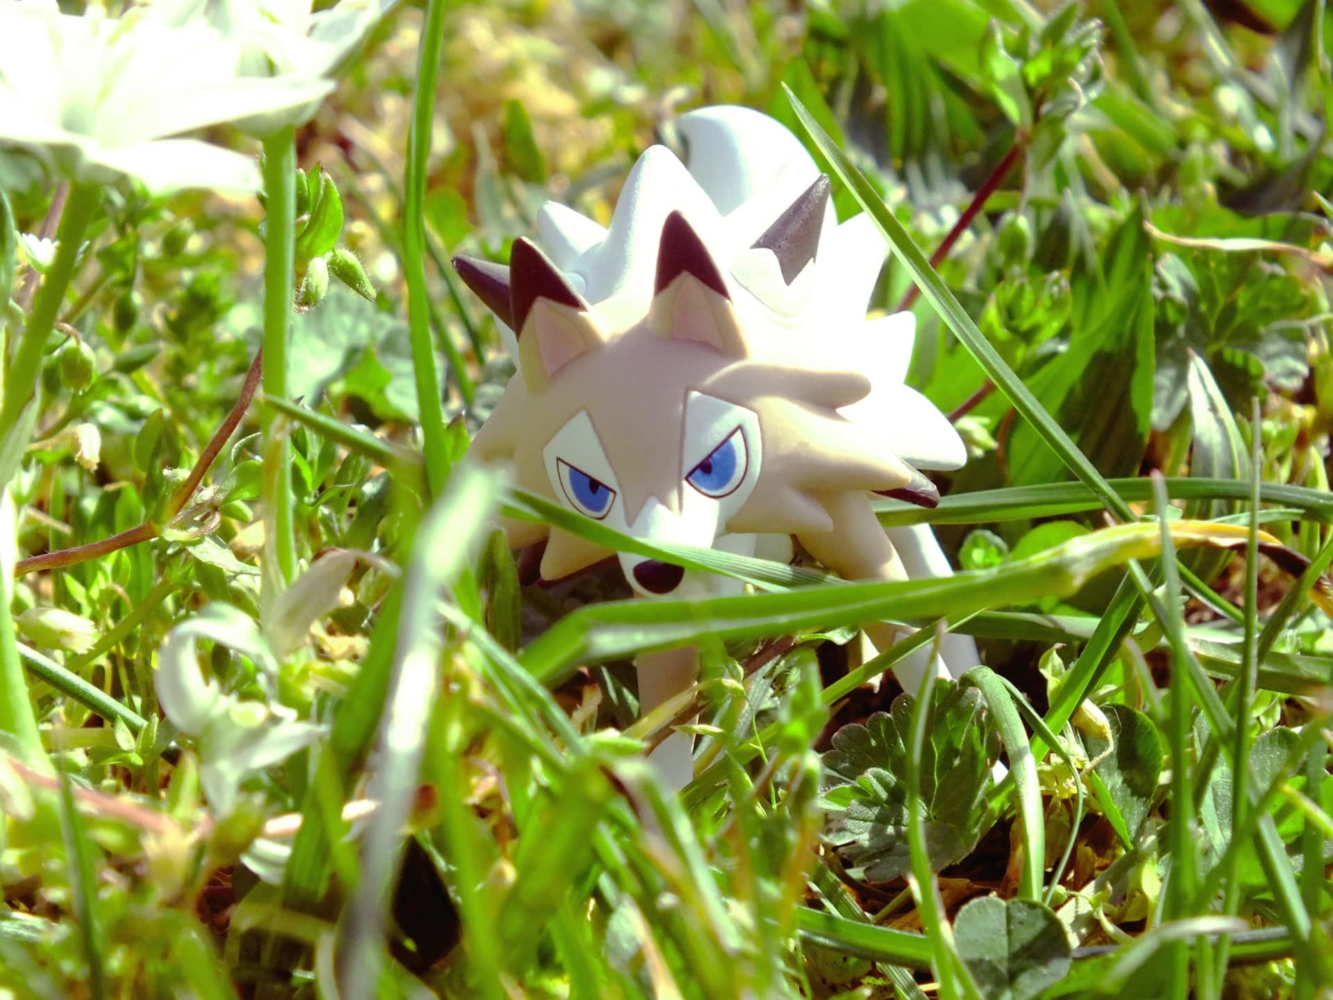 Estelle-Photographie présente une figurine Pokémon de Lugaroc prise par Estelle Autier.